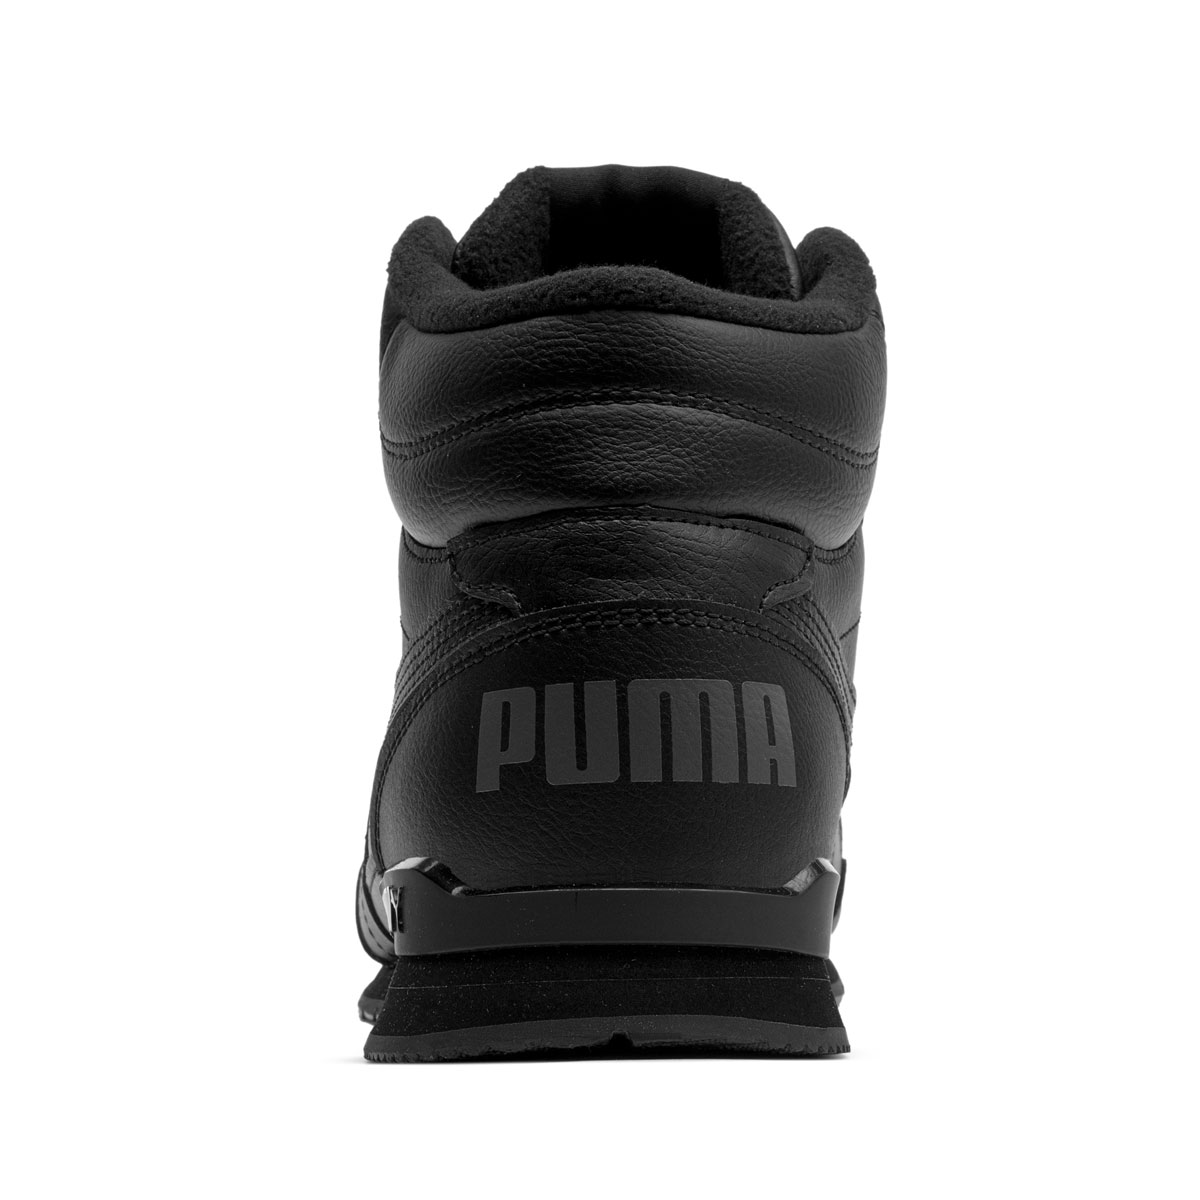 Puma ST Runner V3 Mid Leather Мъжки спортни обувки 387638-01